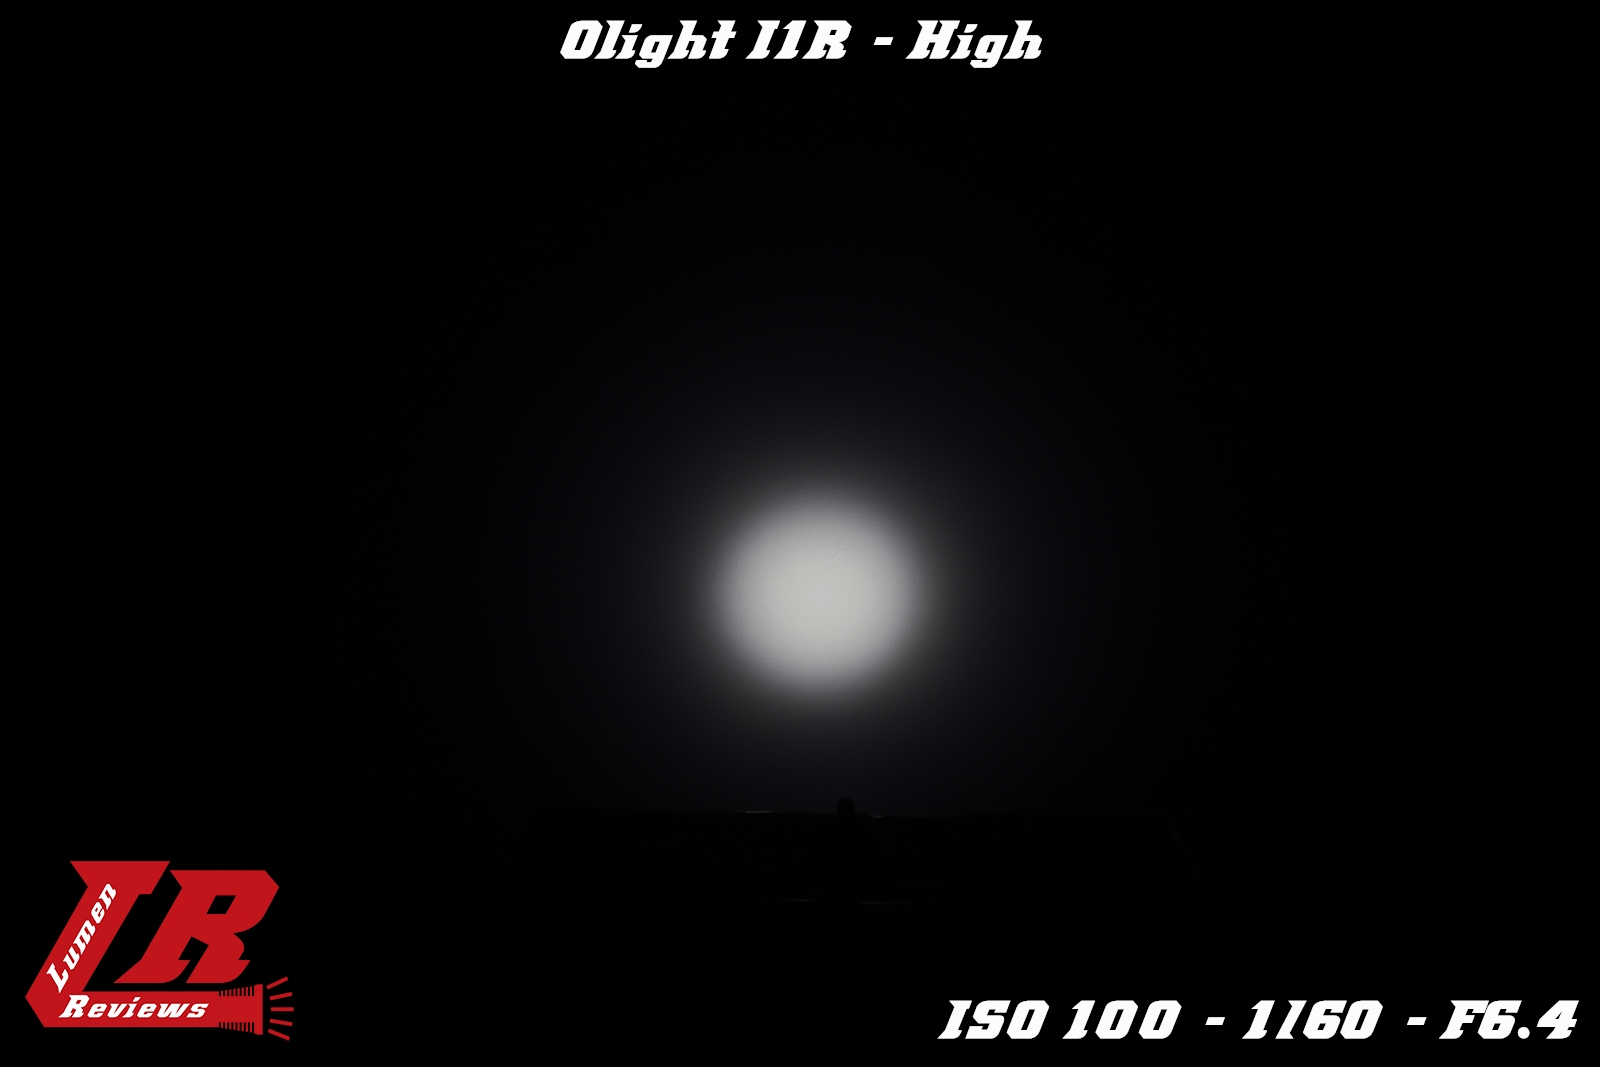 Olight_I1R_17.jpg